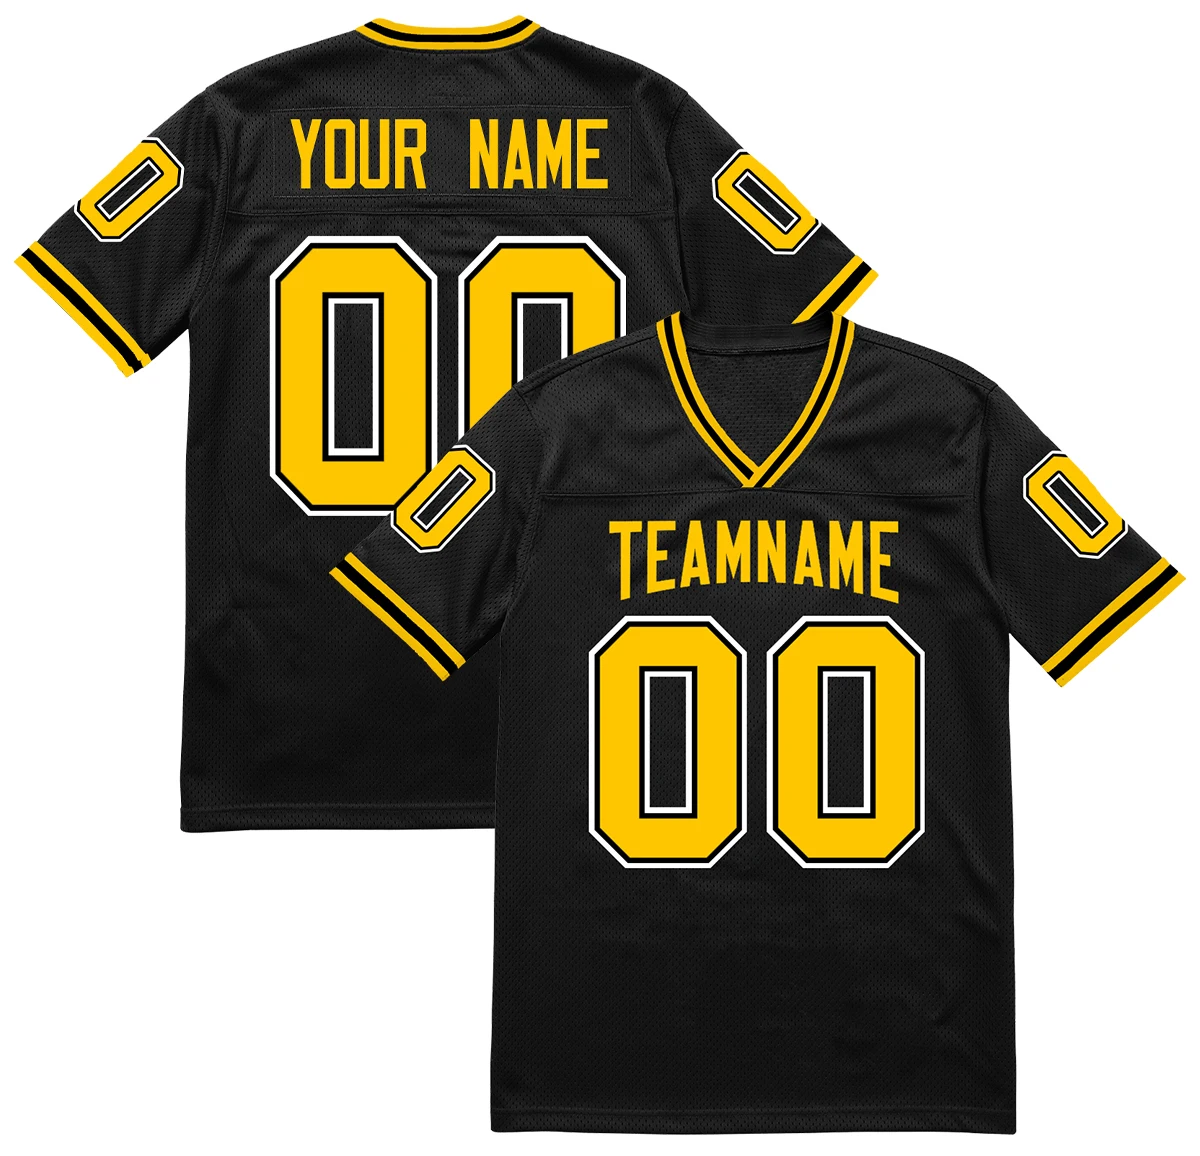 Velkoobchod nestandartní americký fotbal dres výšivka týmový jméno cifra šicí fotbal košile sešívané rugby dres pro men/youth